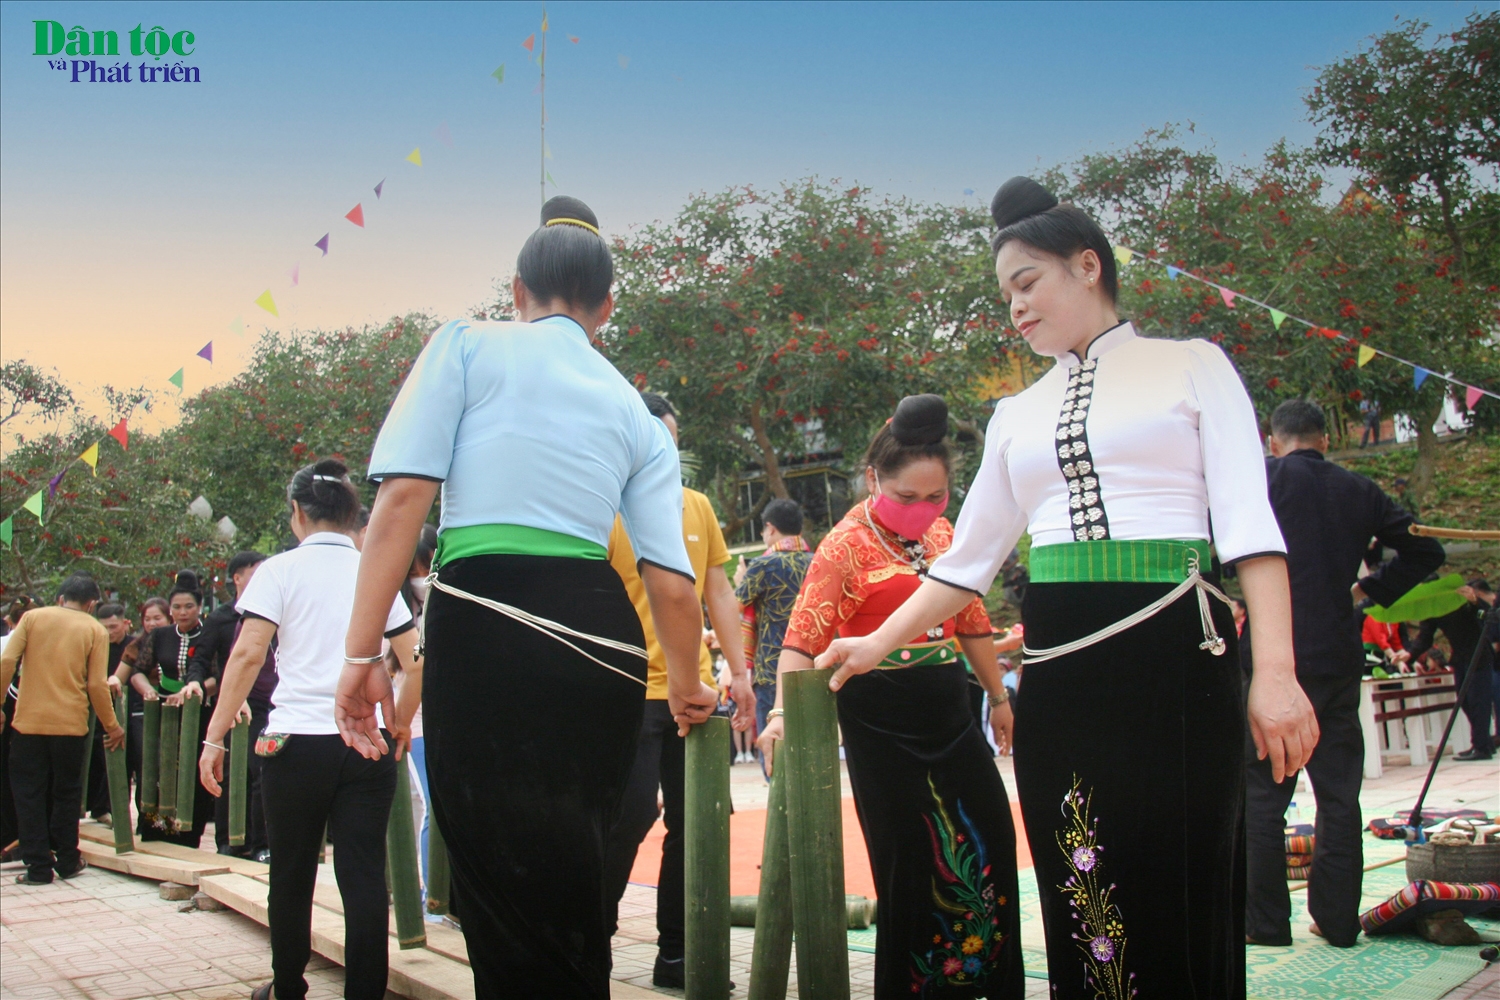 Trong lễ hội Kin pang, các điệu múa, trò diễn được thể hiện bằng nhịp tạo bởi những ống tre nện xuống nền đất